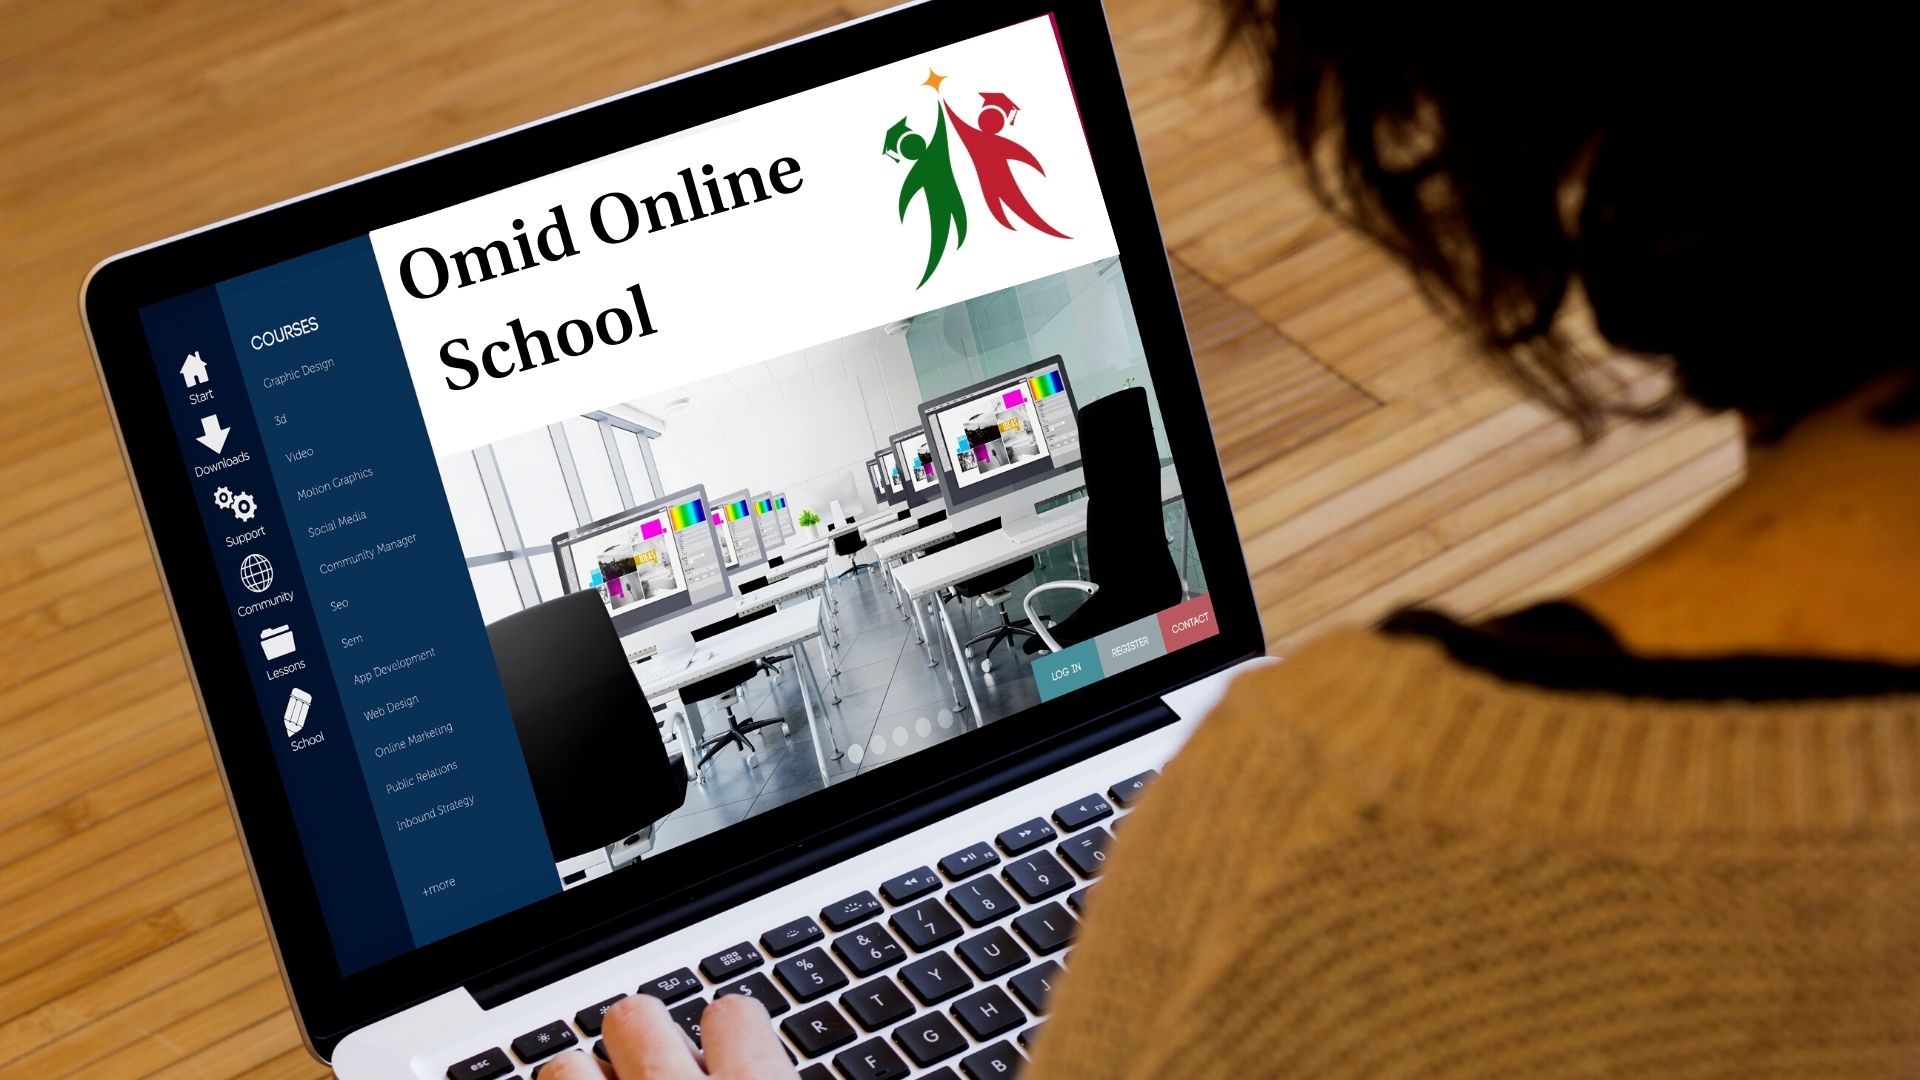 Omid Online School